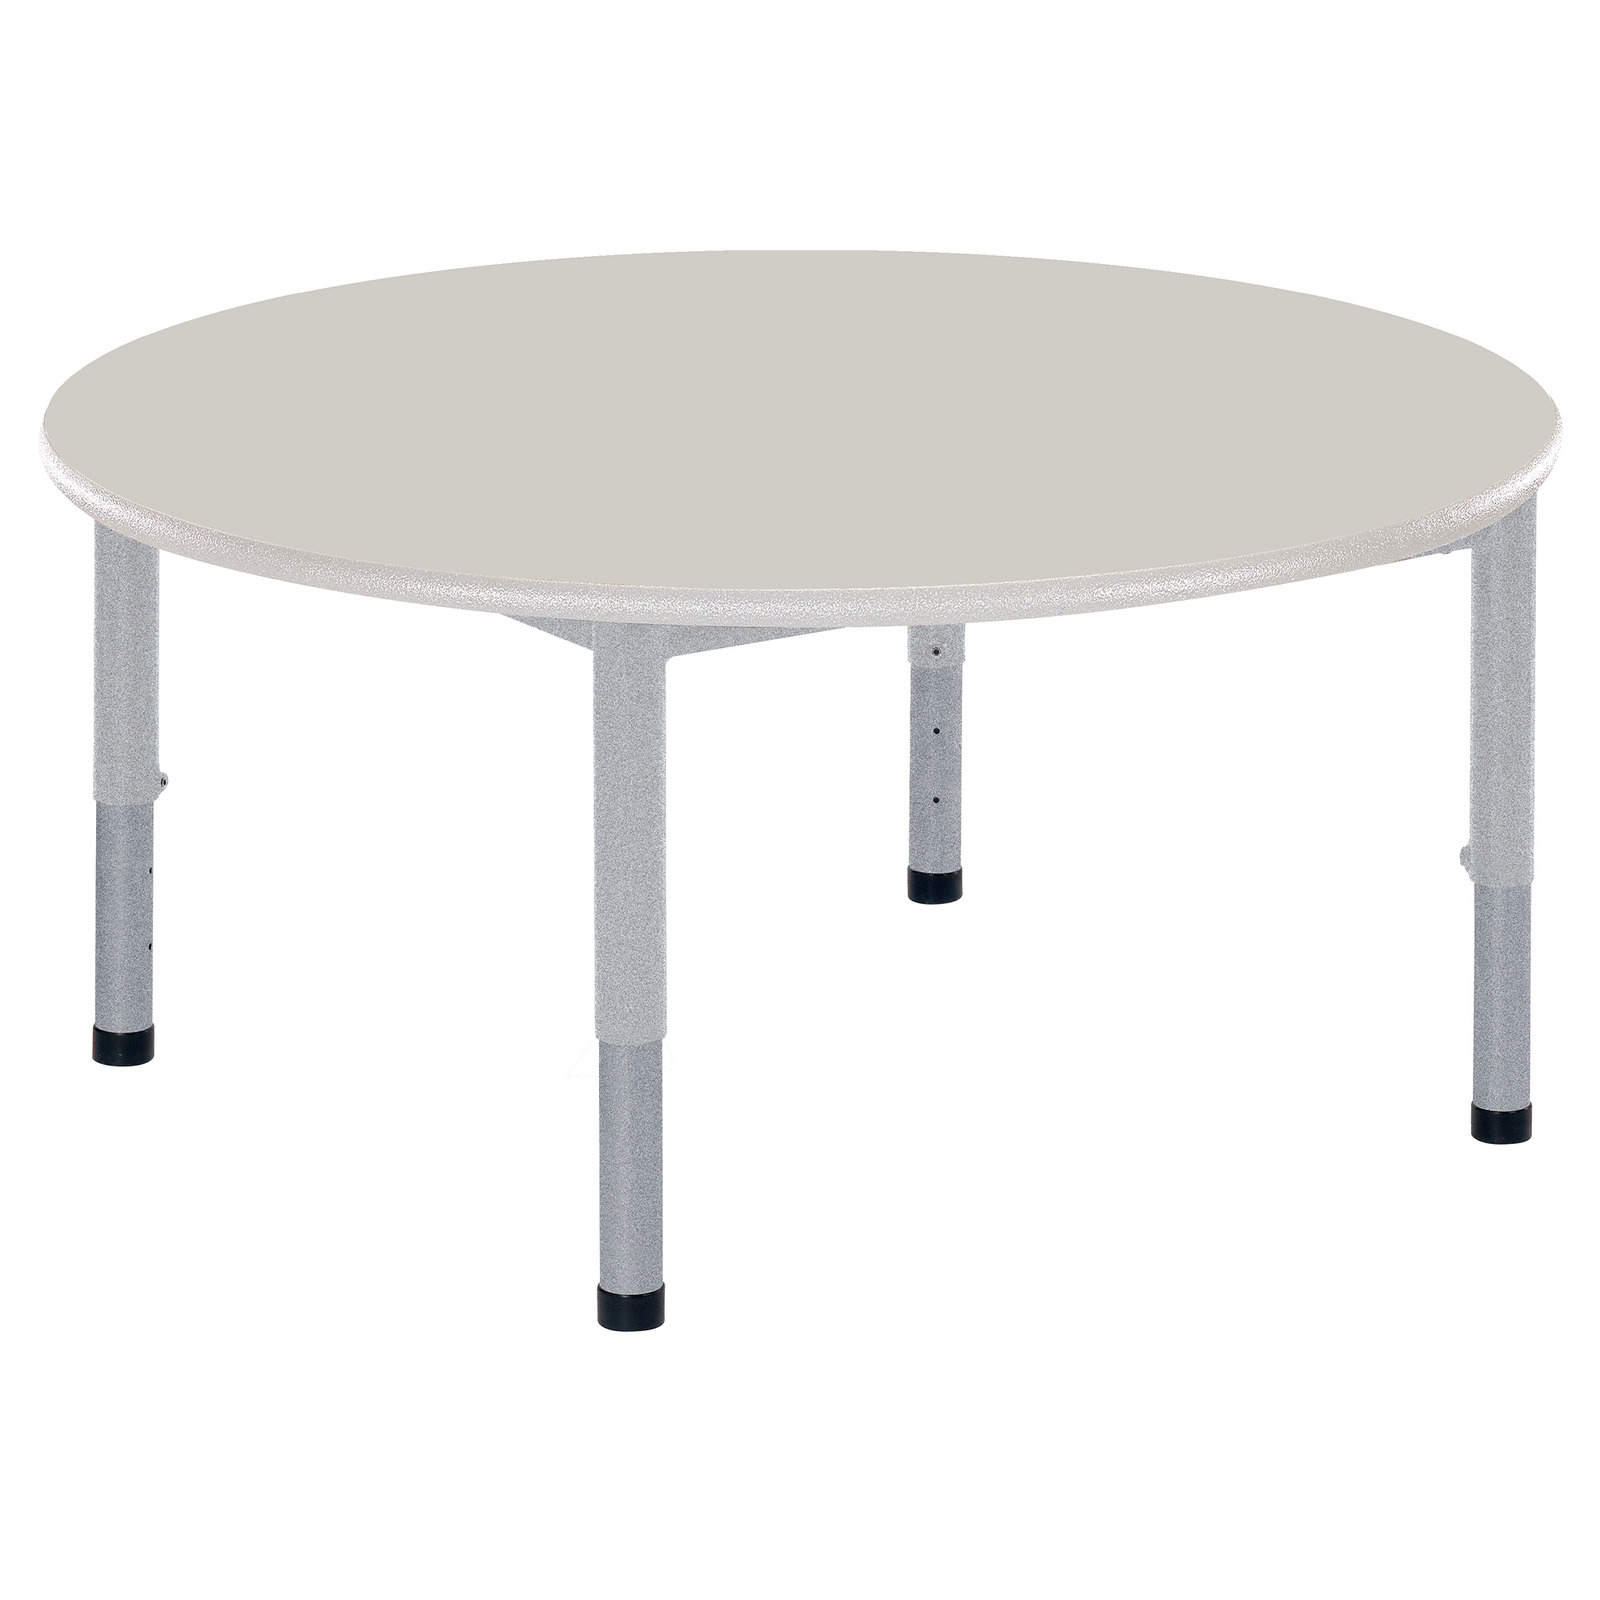 Harlequin Grey Circular Table - 105cm Diameter - Each